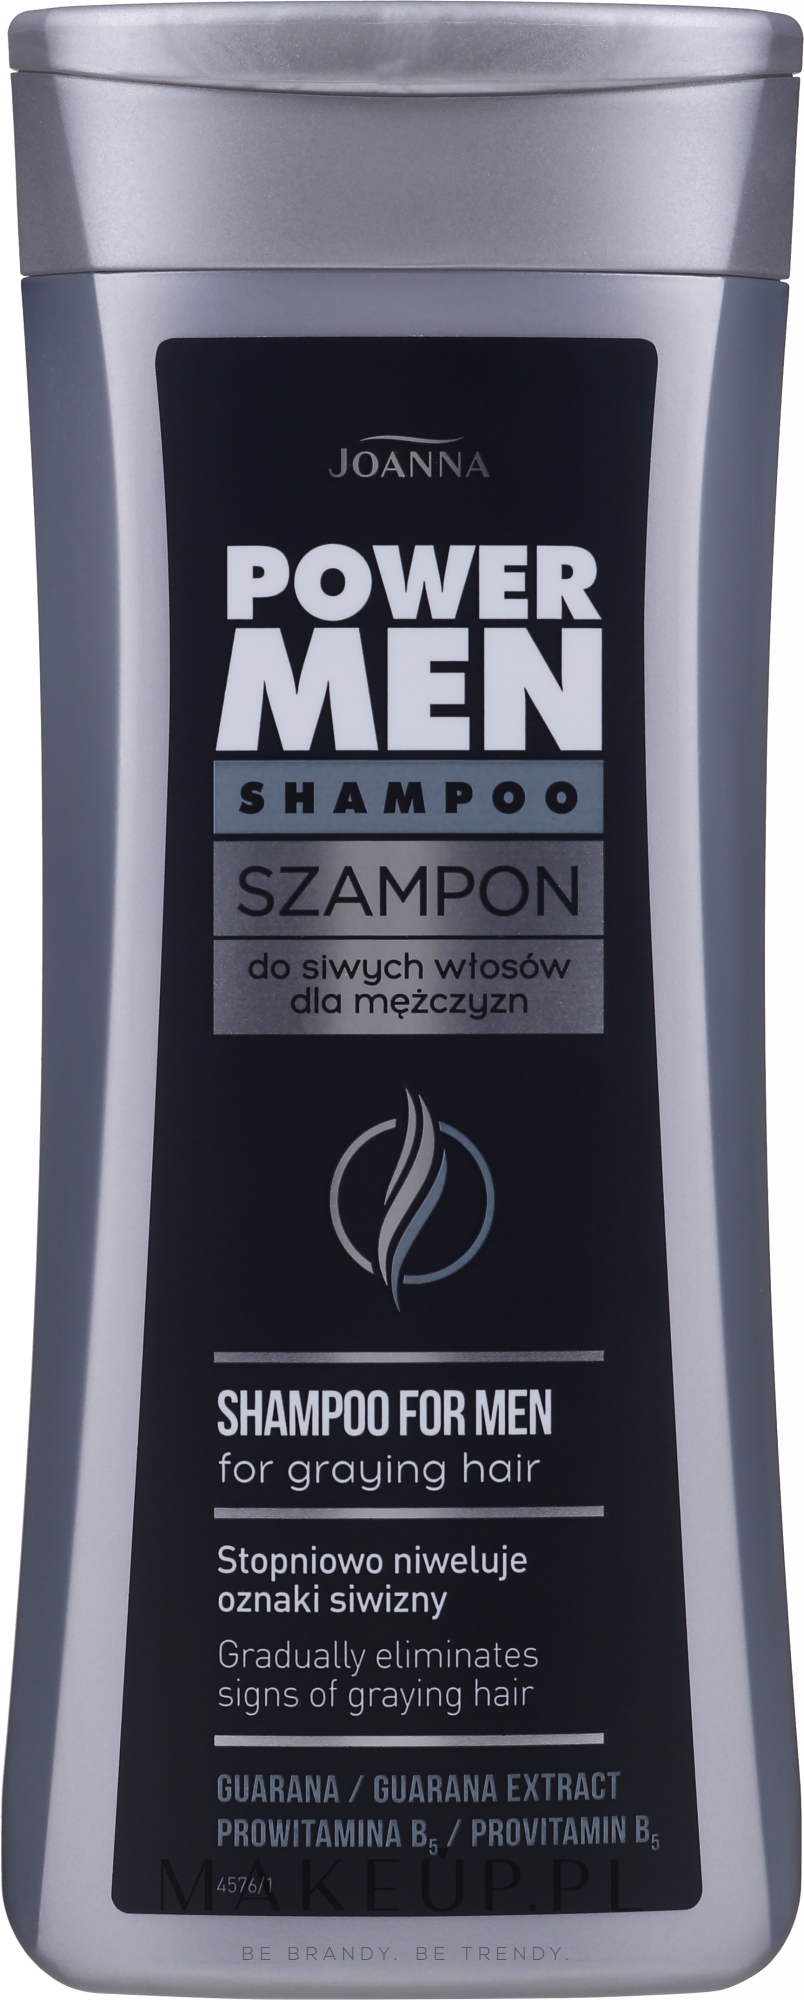 szampon przeciw siwieniu joanna